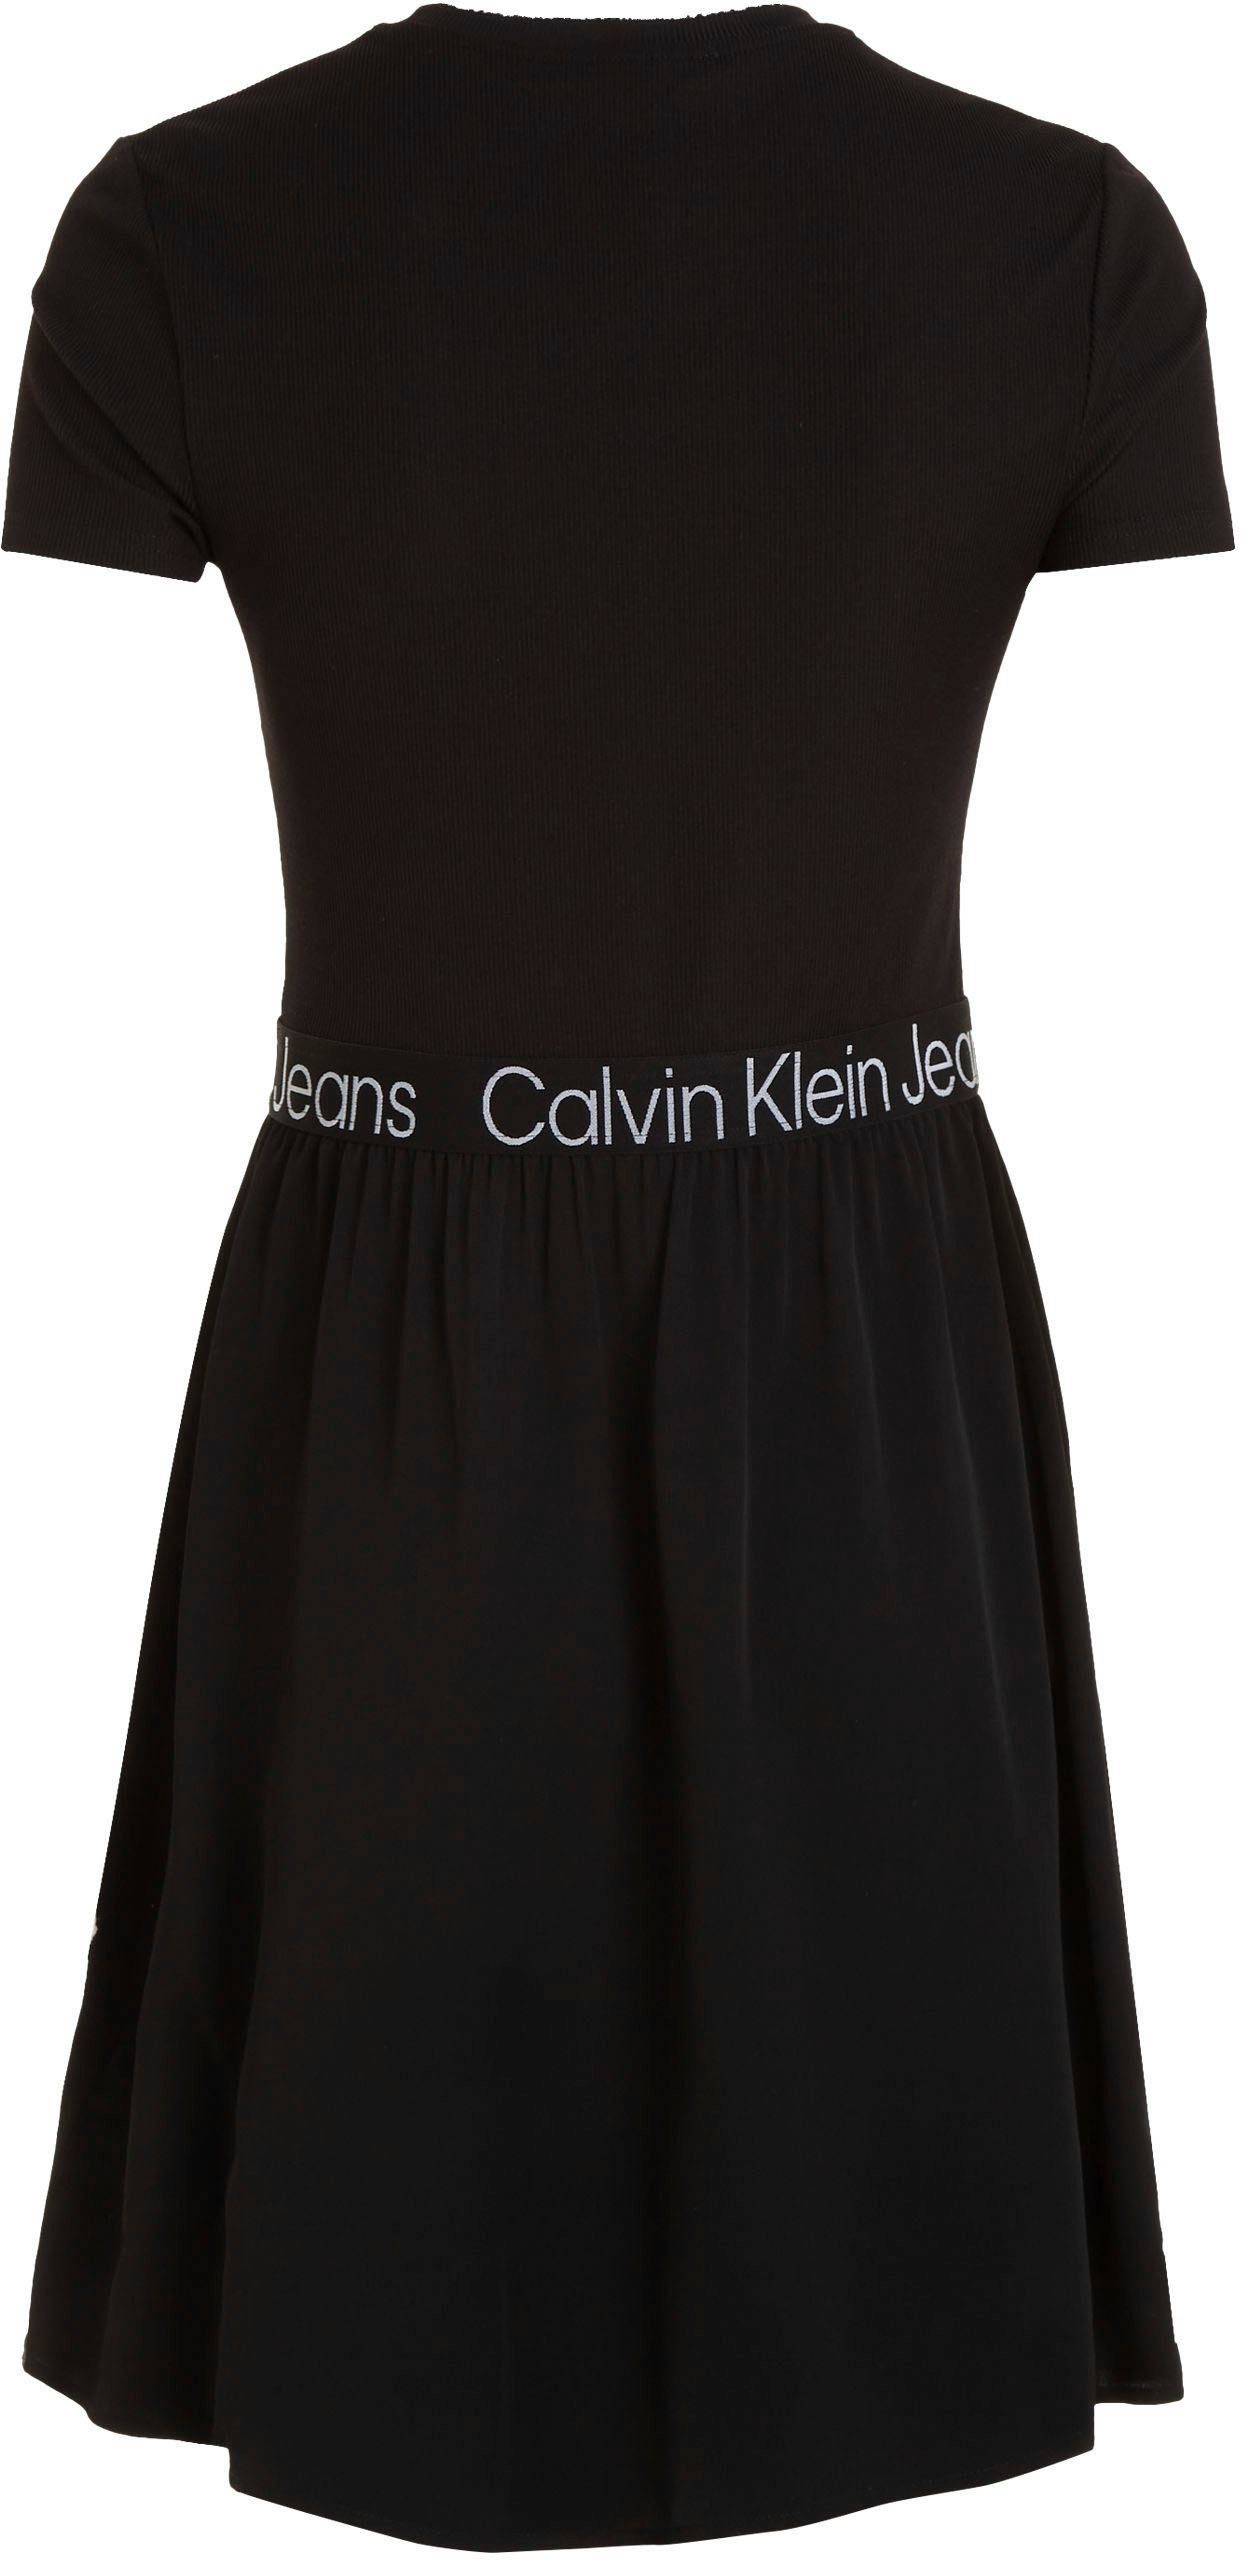 Materialmix Calvin Klein Jeans schwarz 2-in-1-Kleid im